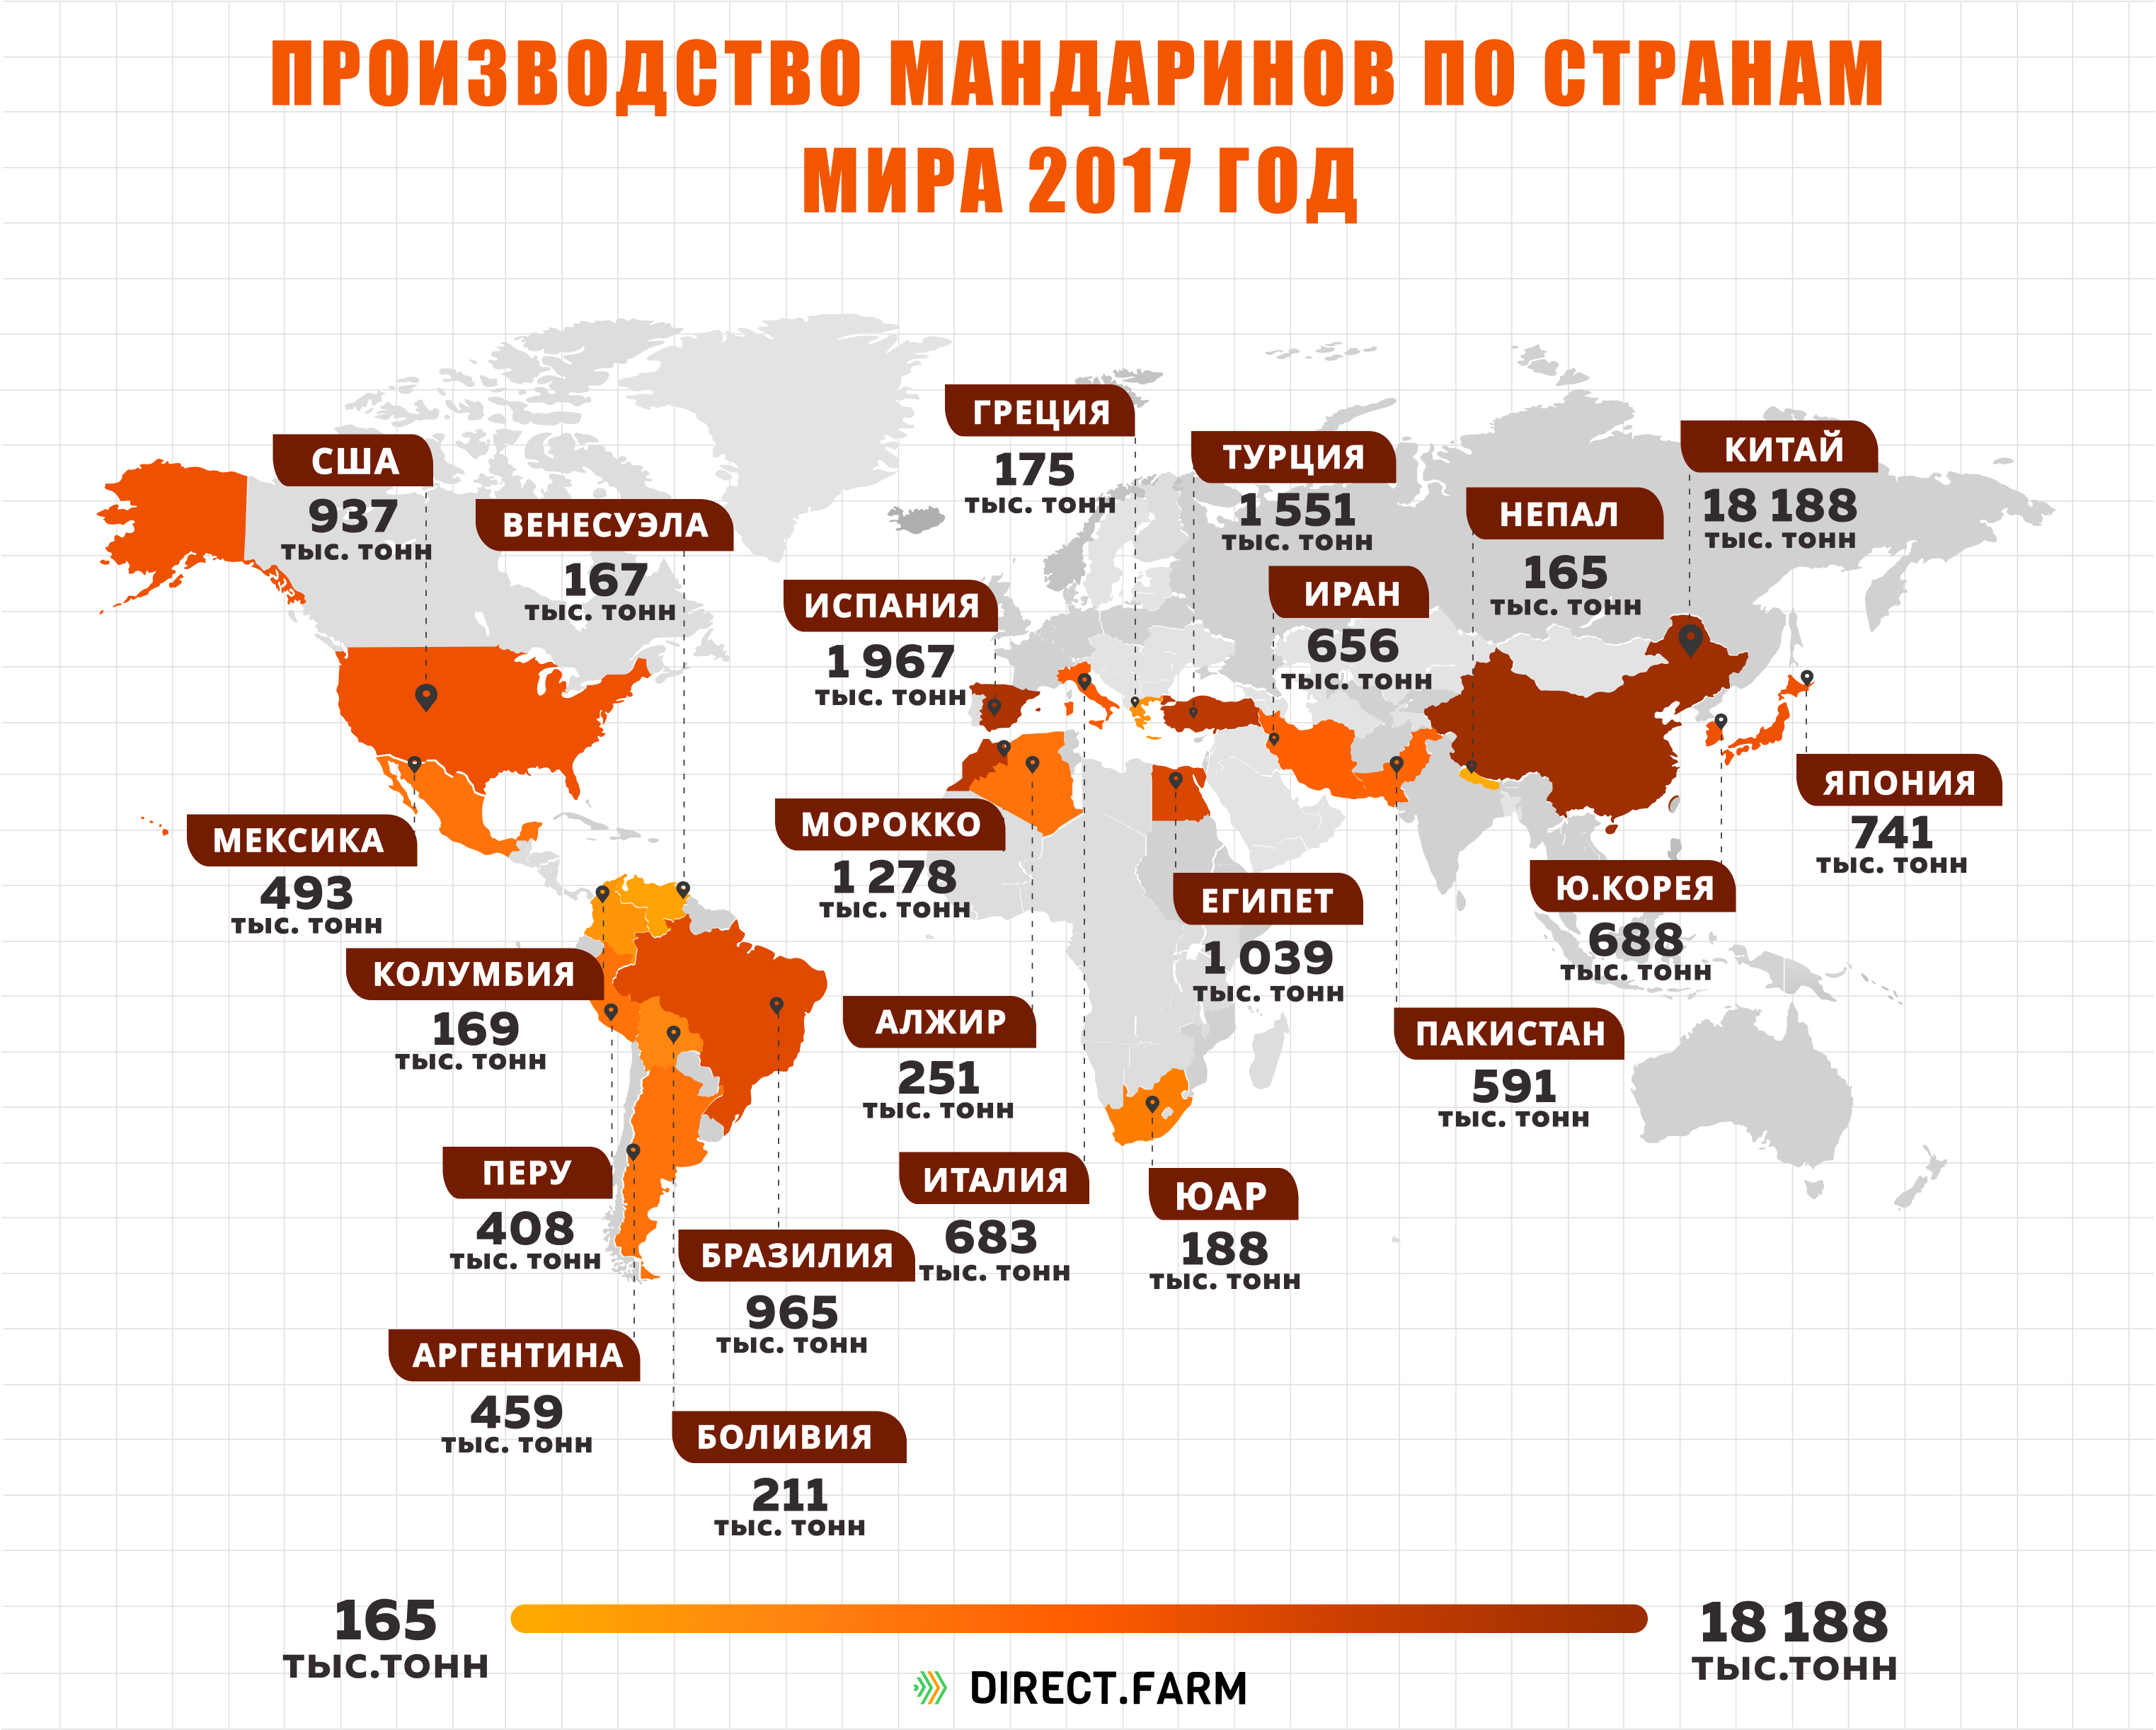 Крупнейшими производителями риса являются. Страны Лидеры по производству мандарин. Крупнейшие производители цитрусовых в мире. Страна Лидер по производству мандаринов. Страны по выращиванию цитрусовых.